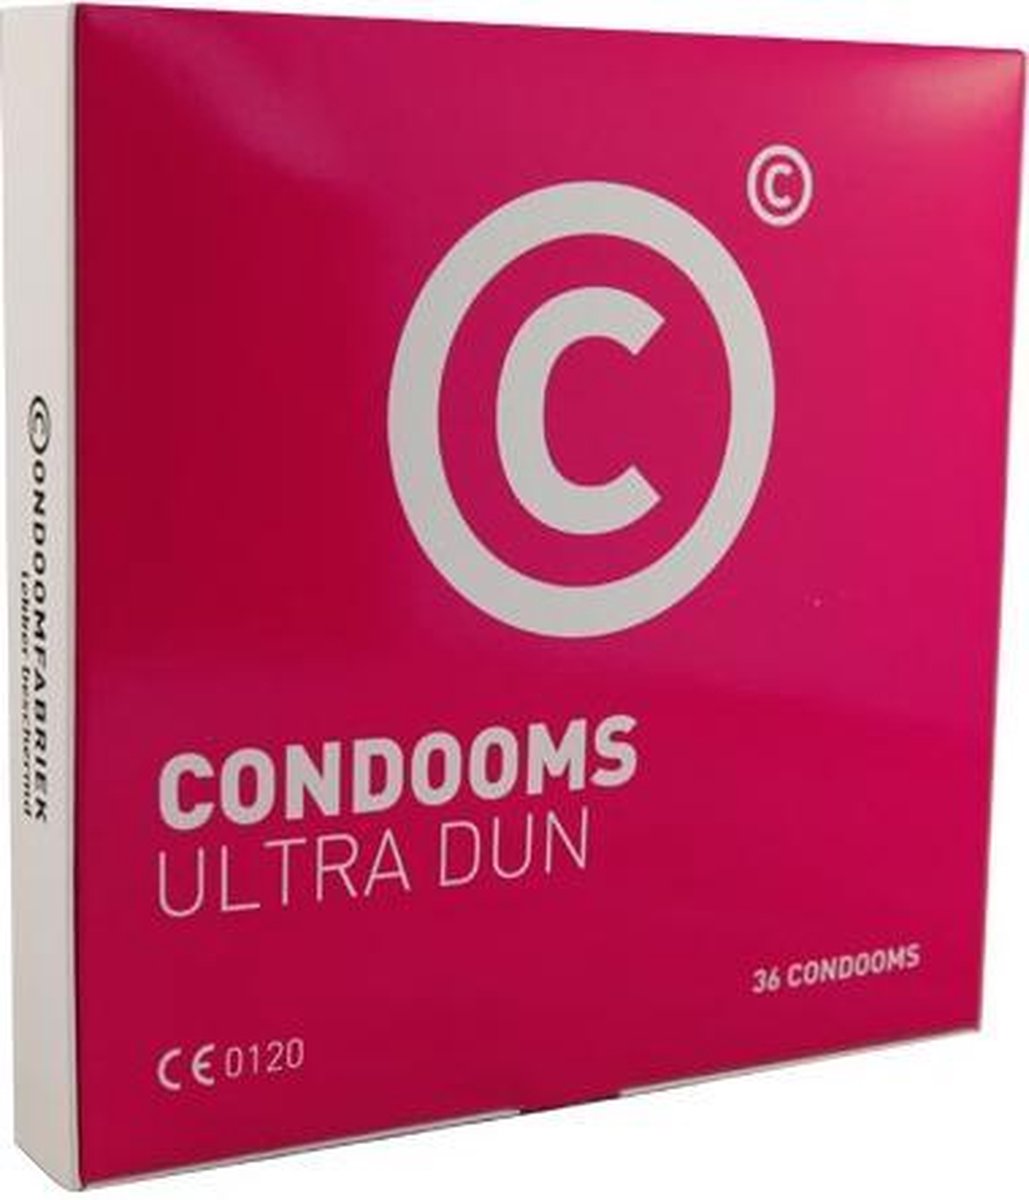 Condoomfabriek - Ultra Dun Feeling Condooms - 36 stuks